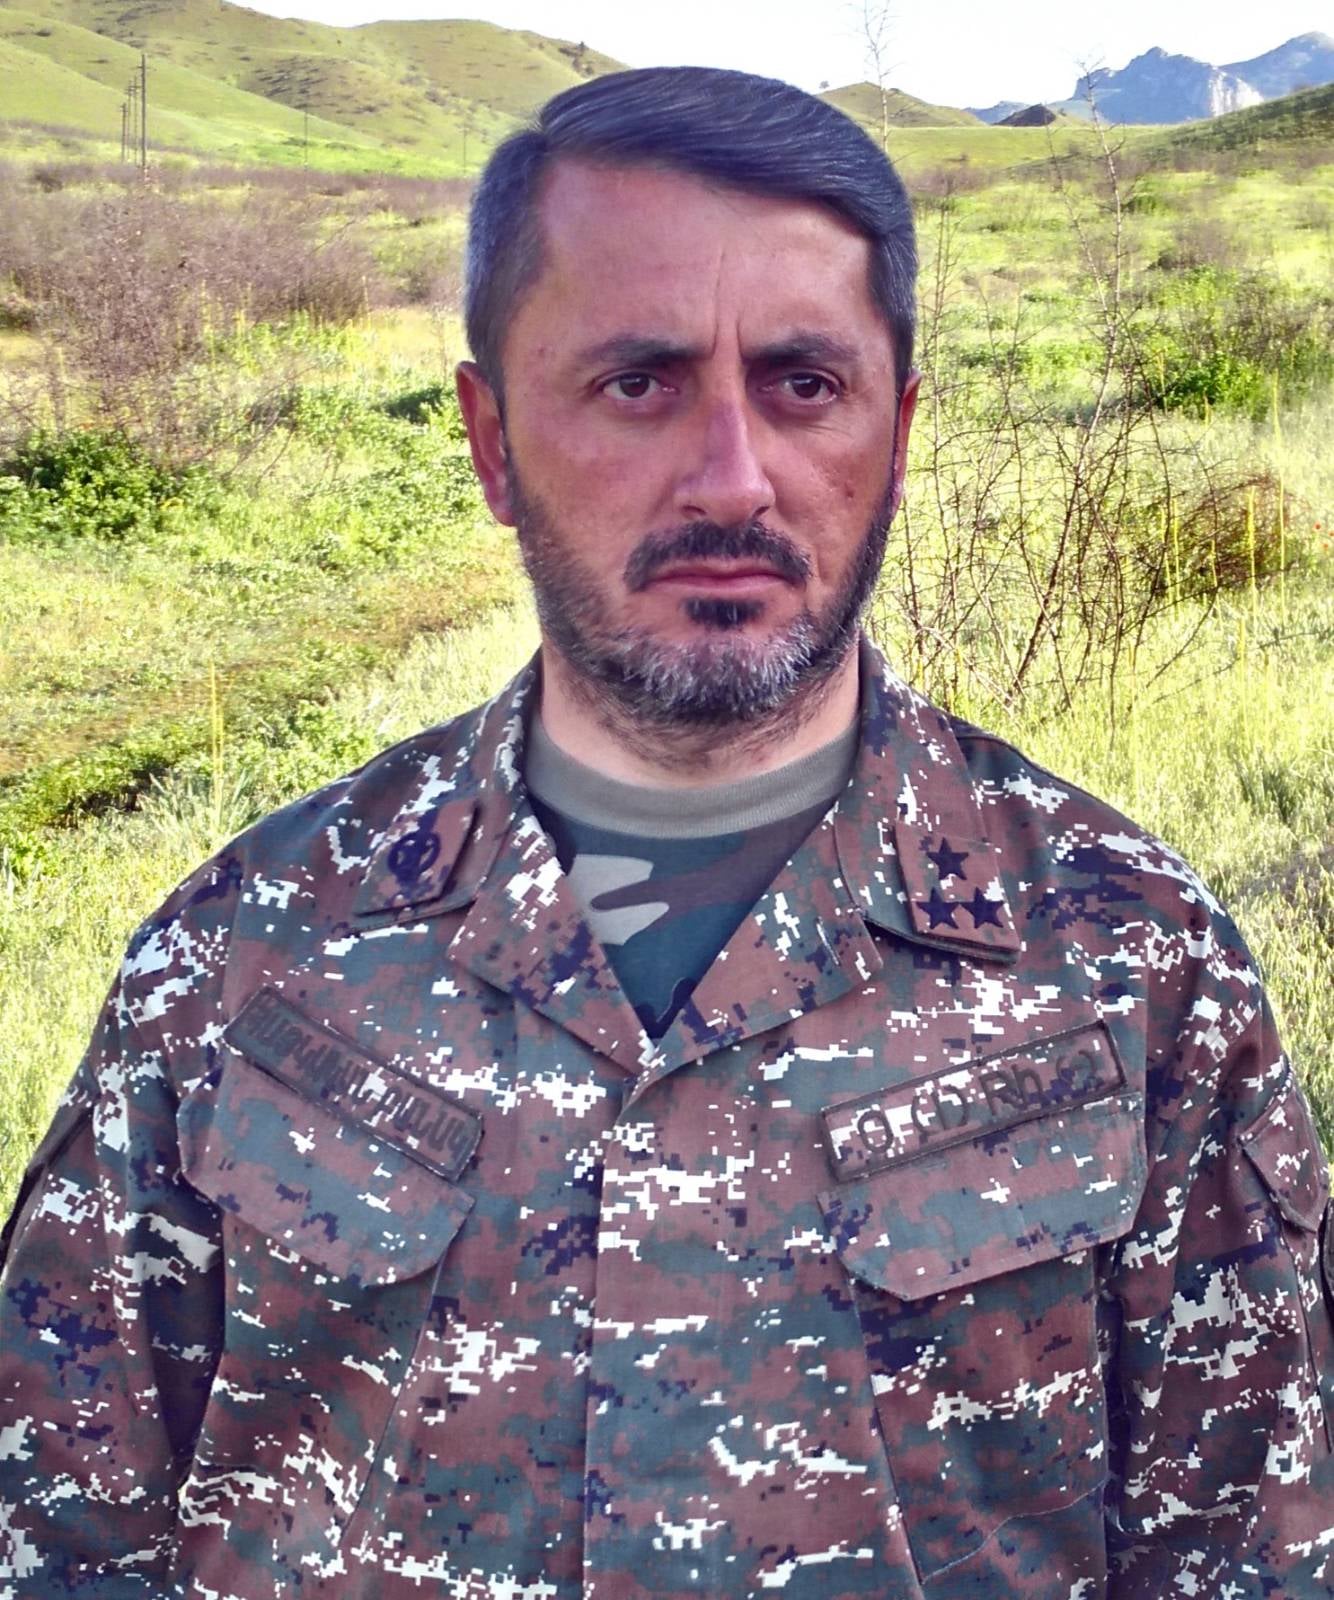 Հայաստանի անվտանգության հիմնասյունները բացառապես երկուսն են՝ բանակ ու ՀԱՊԿ. Խաչիկ Ասրյան